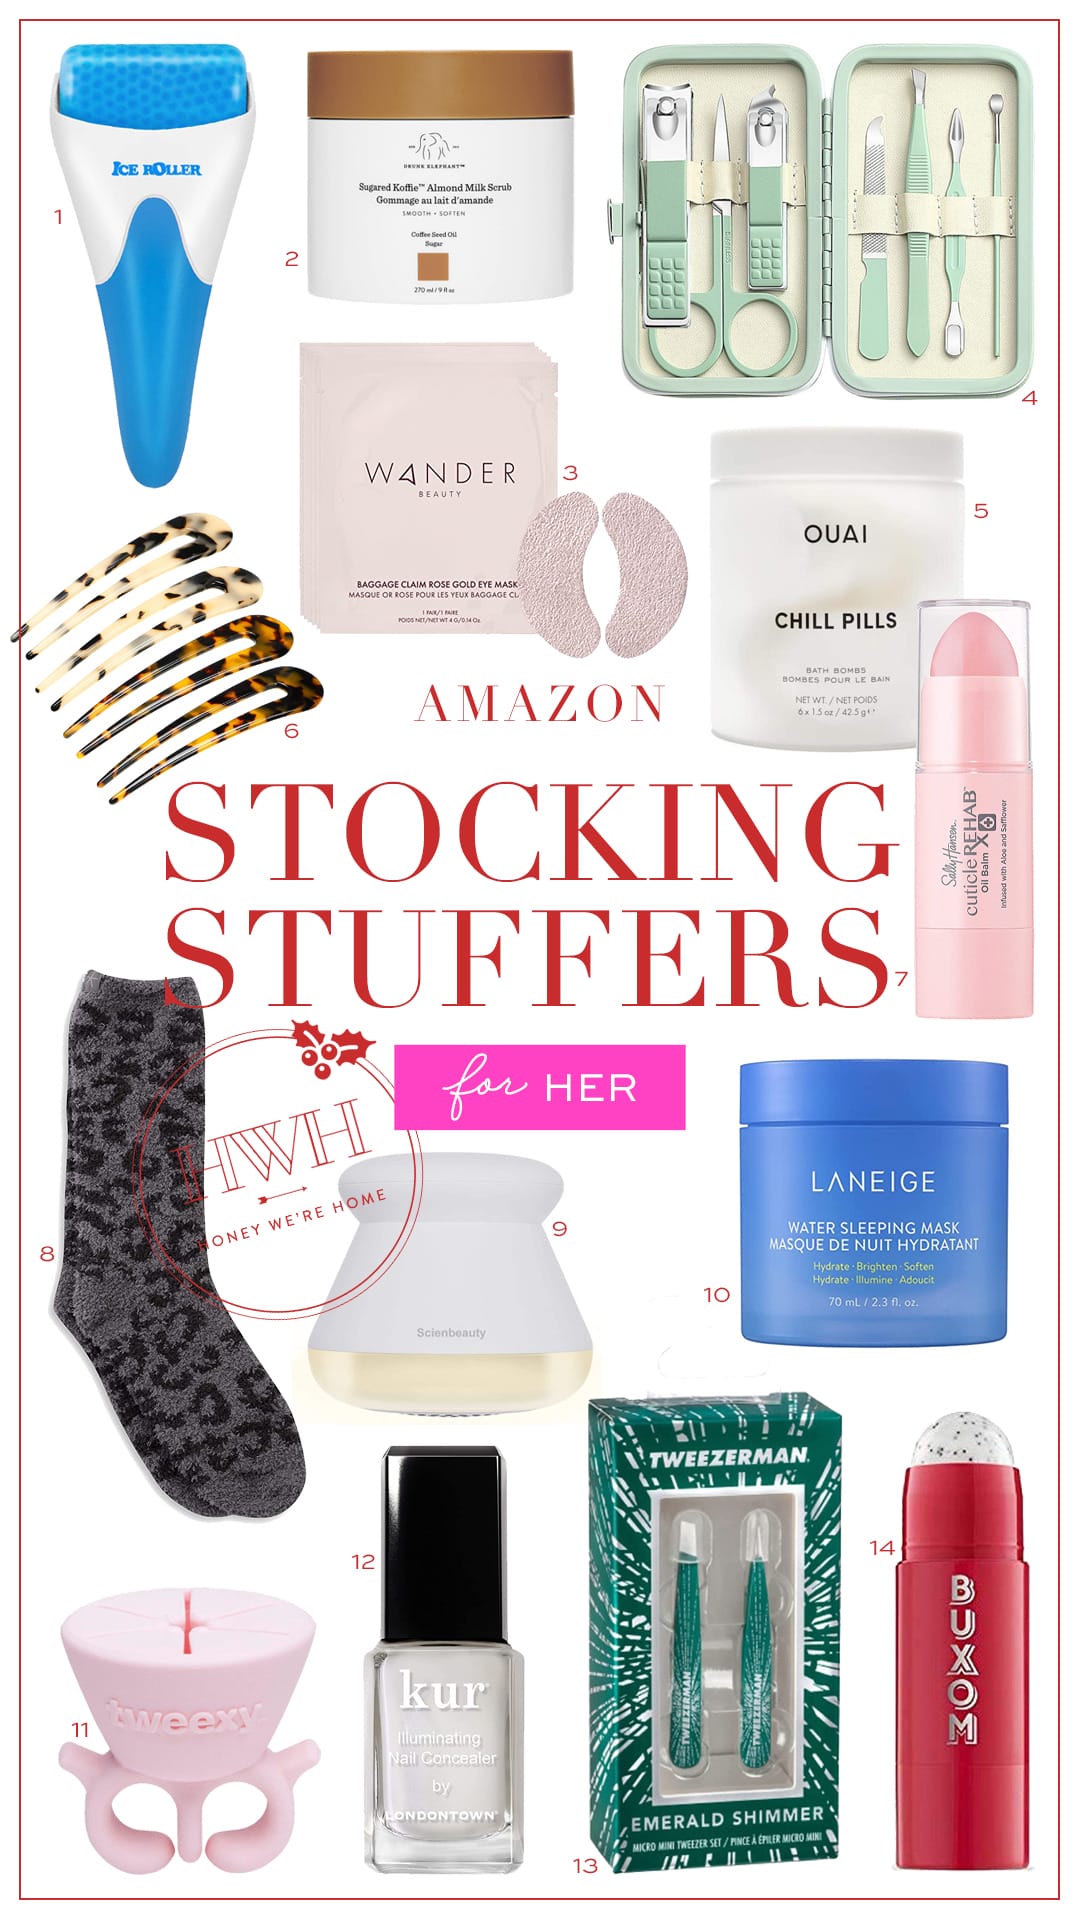 stocking stuffers for men — Hello Honey